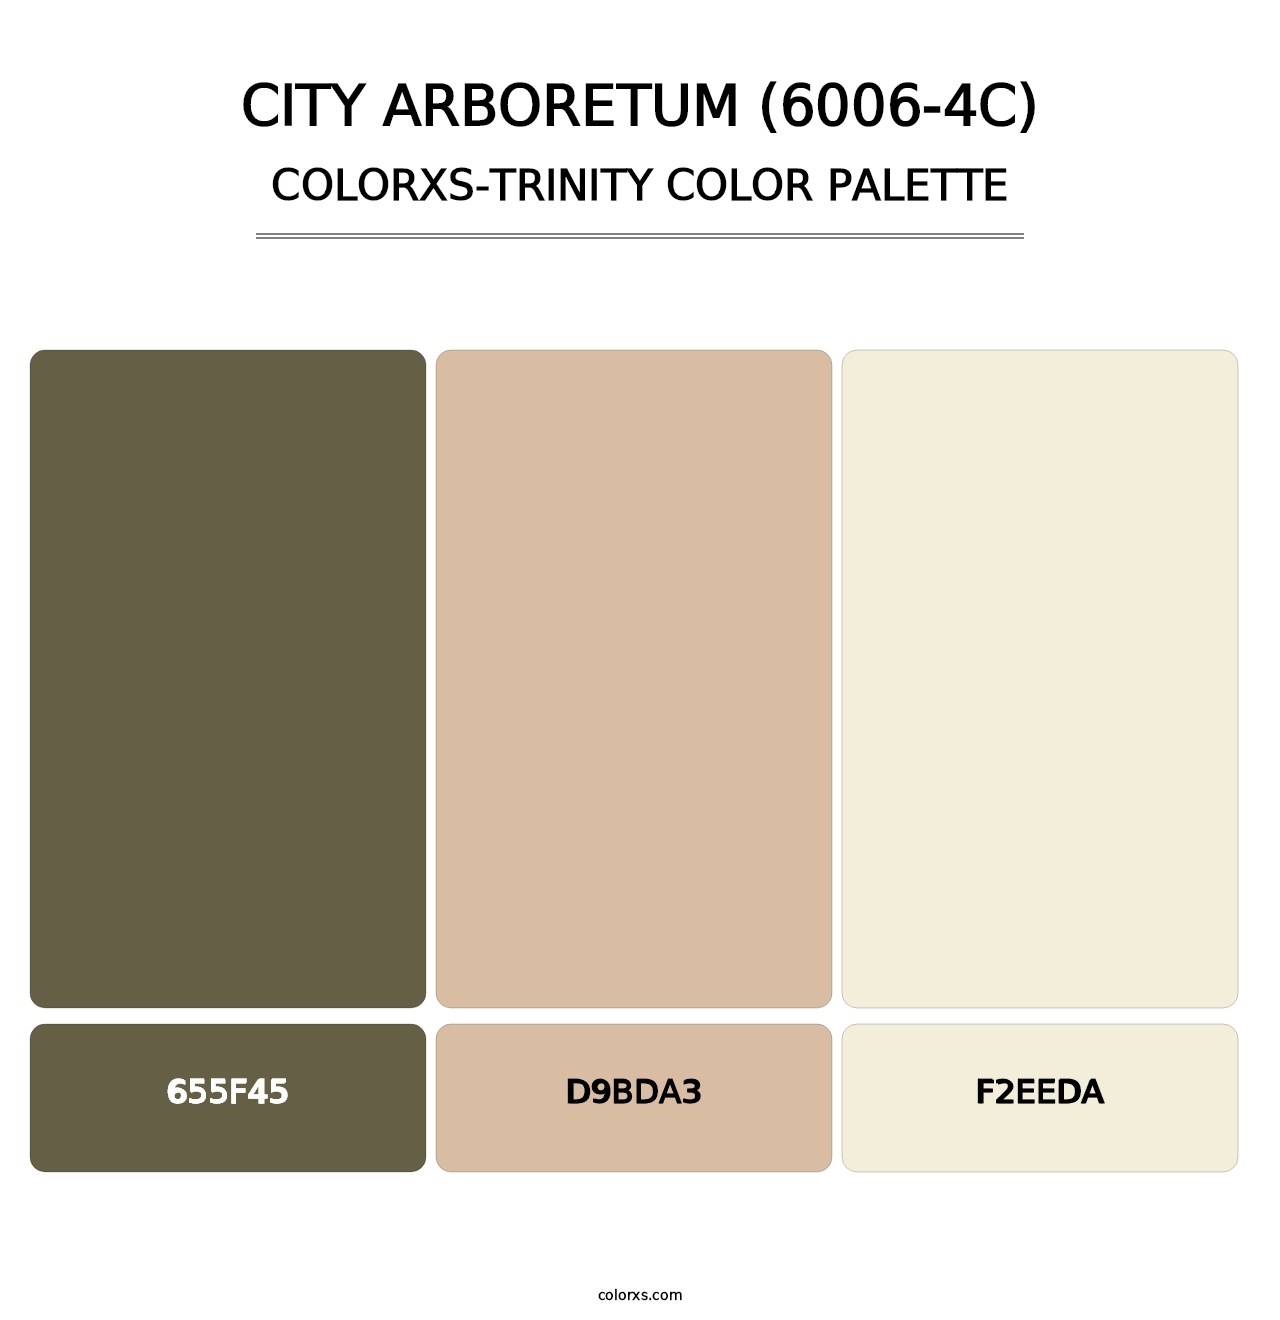 City Arboretum (6006-4C) - Colorxs Trinity Palette